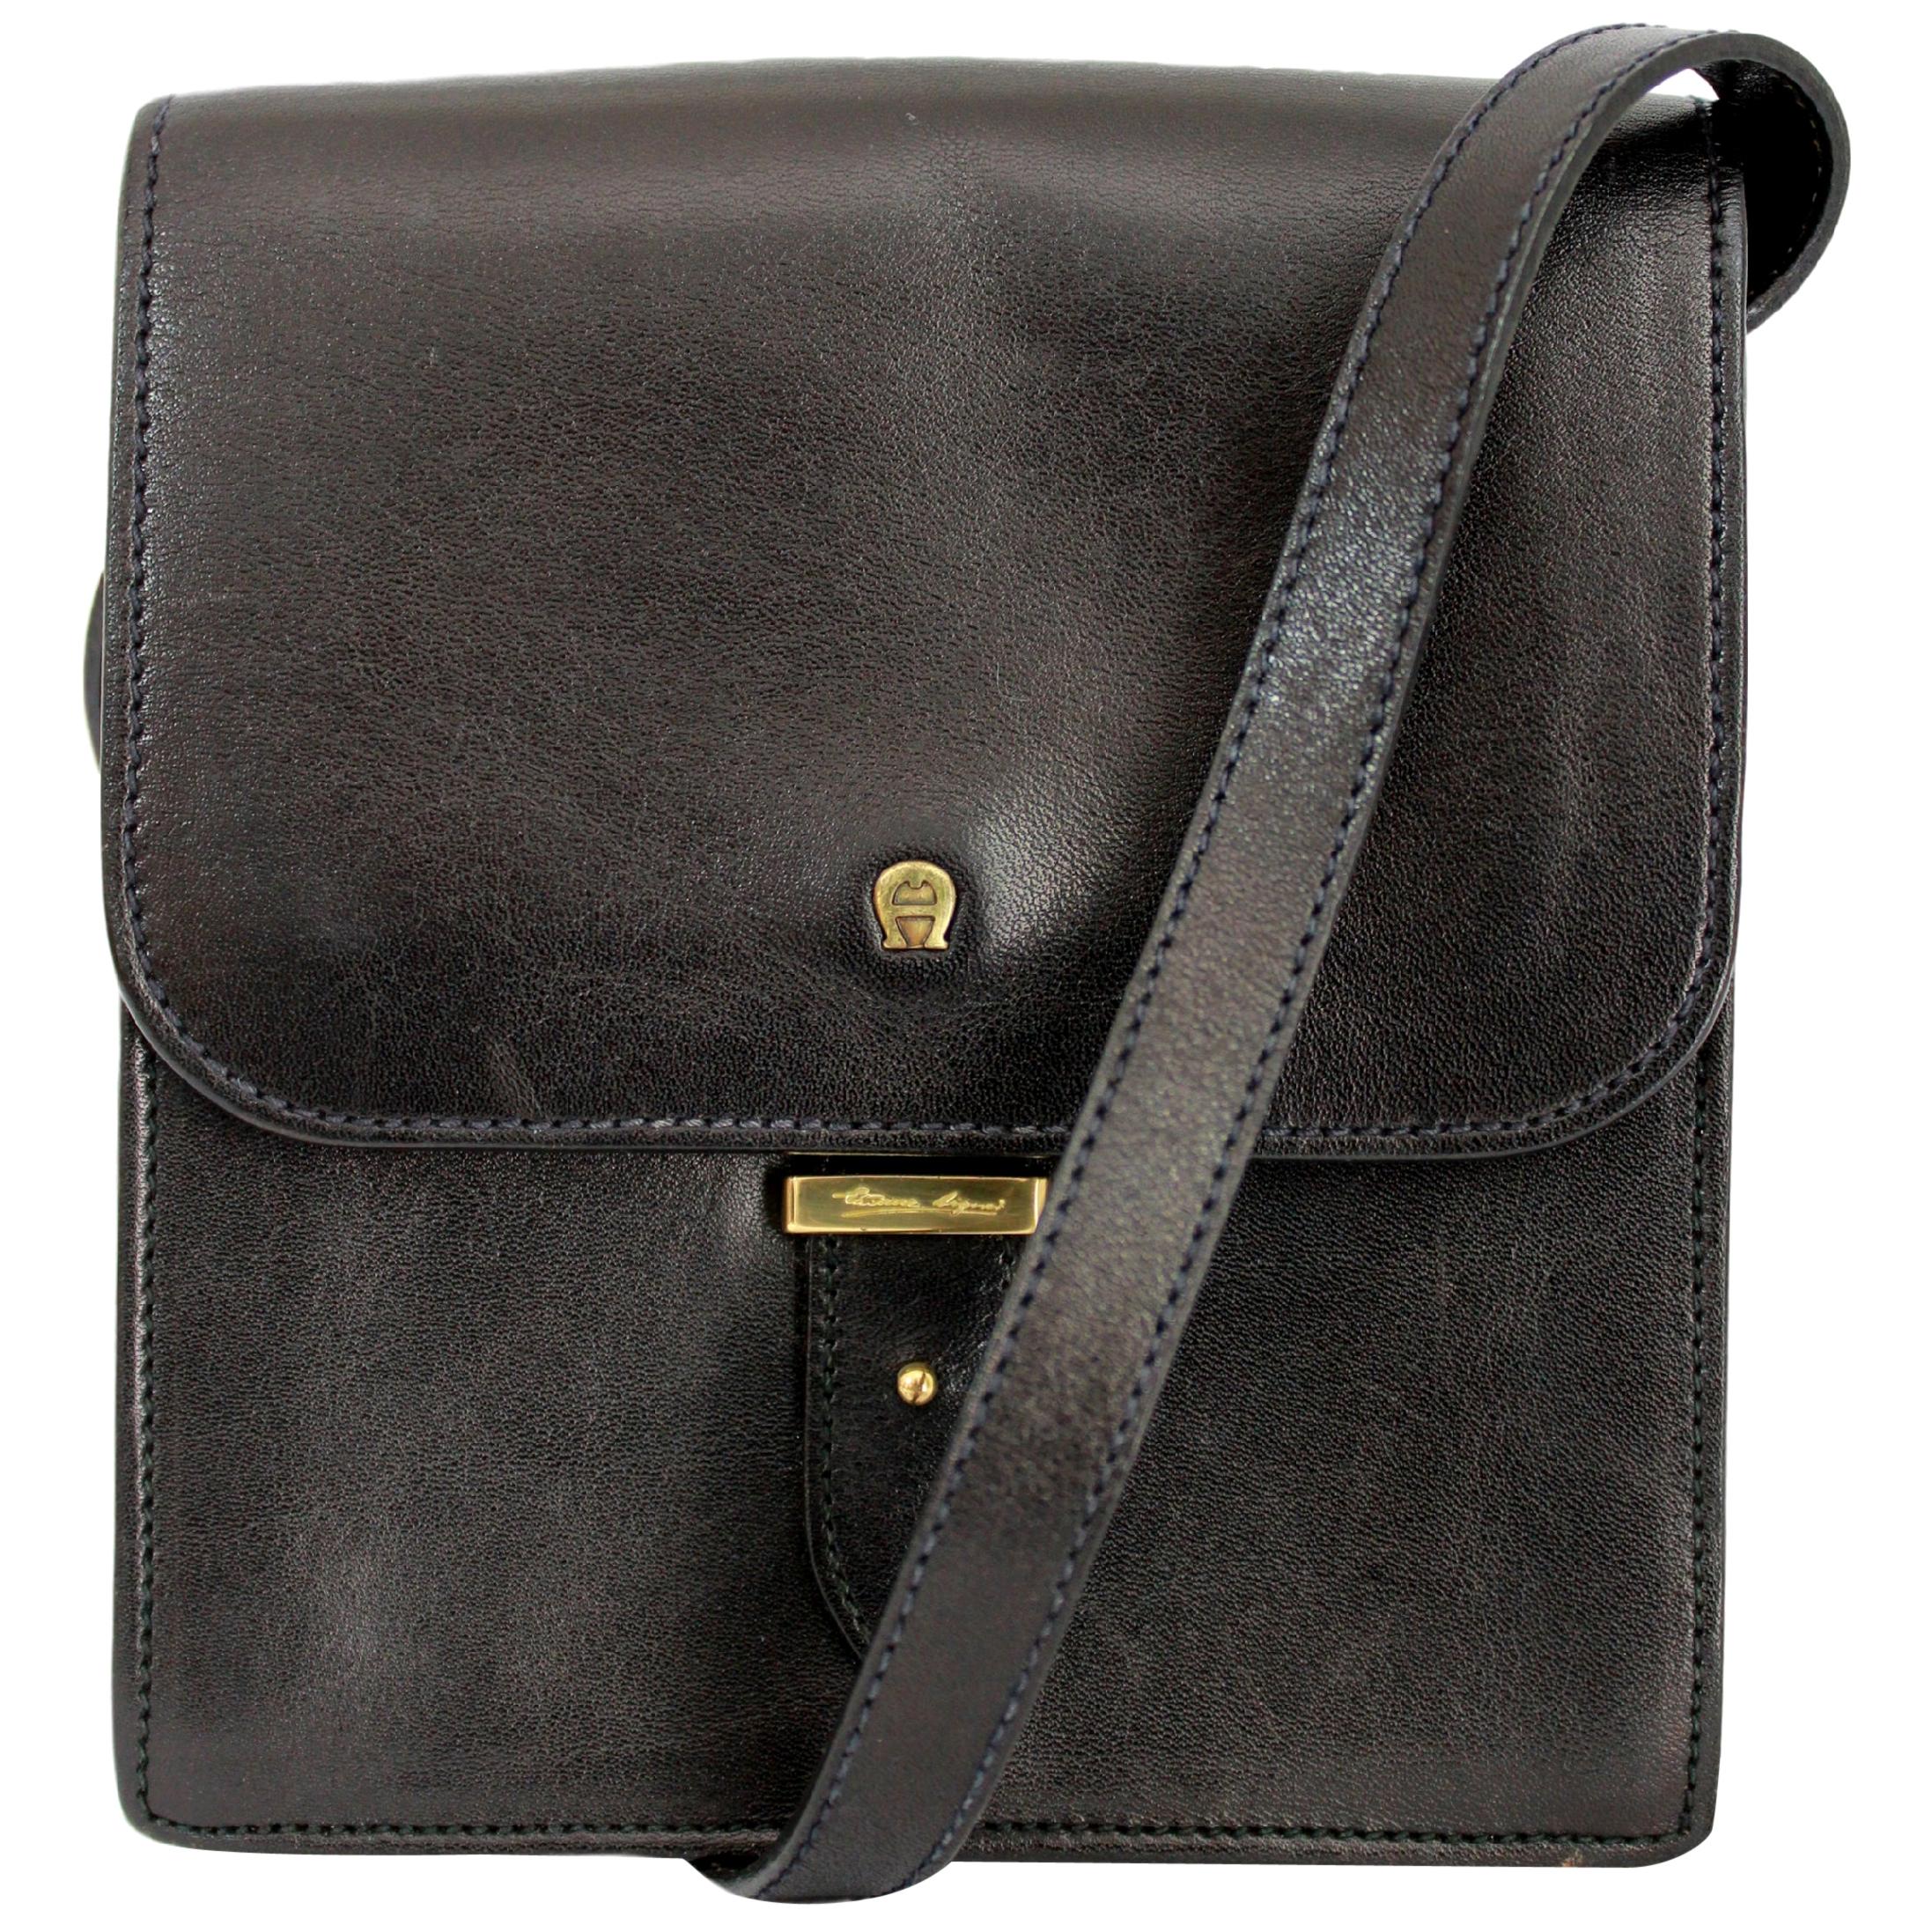 Etienne Aigner Leather Black Shoulder Bag